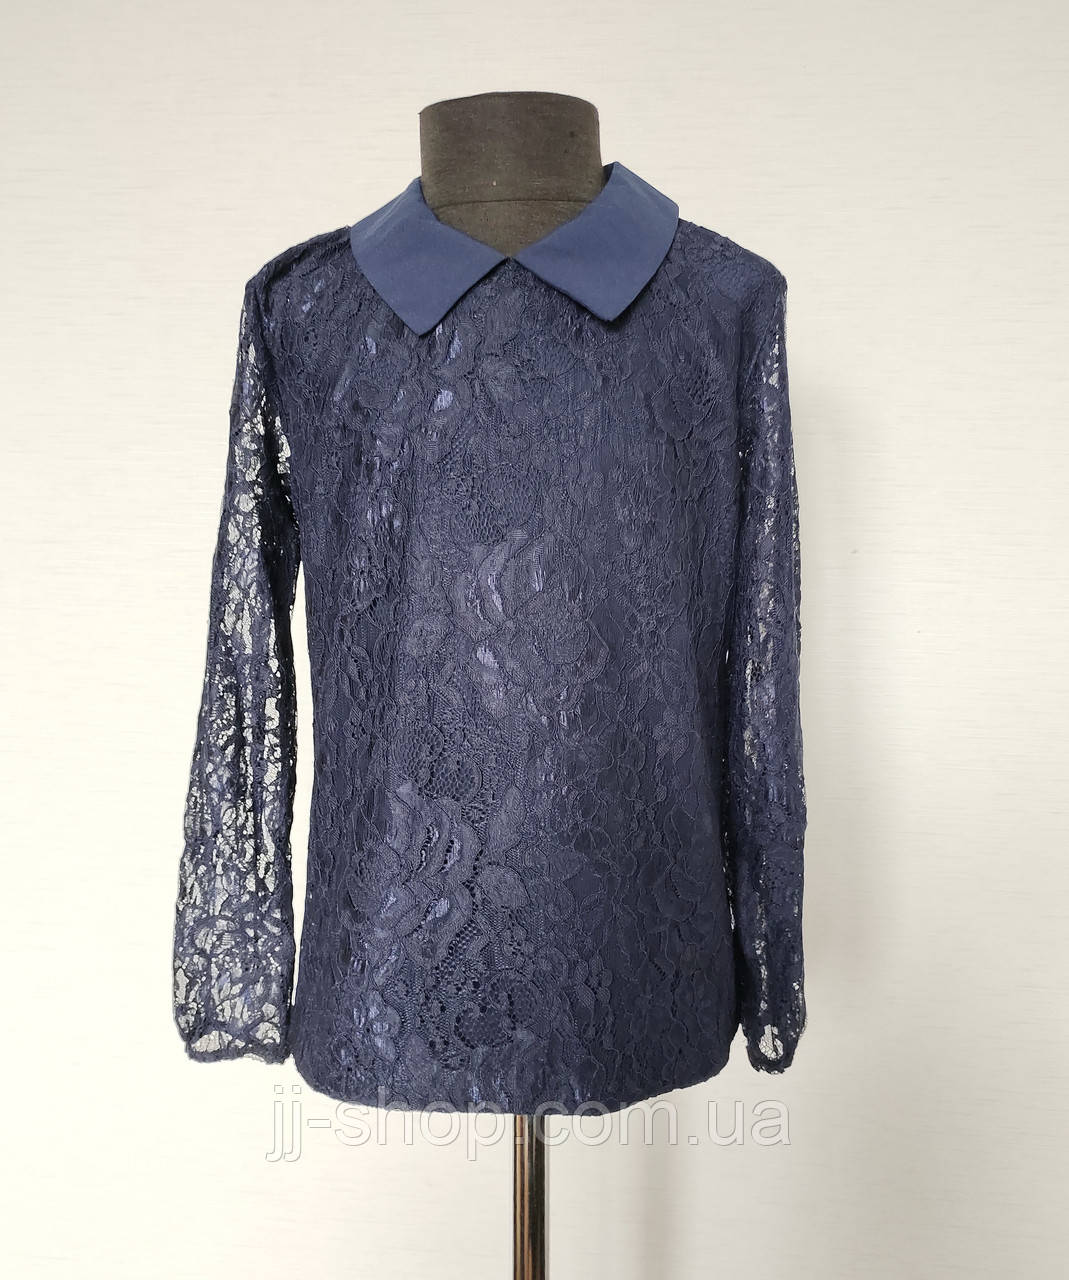 Дитяча шкільна блузка для дівчаток 134,140,146,152 розмір, молочнтемно-синього кольору гіпюрова